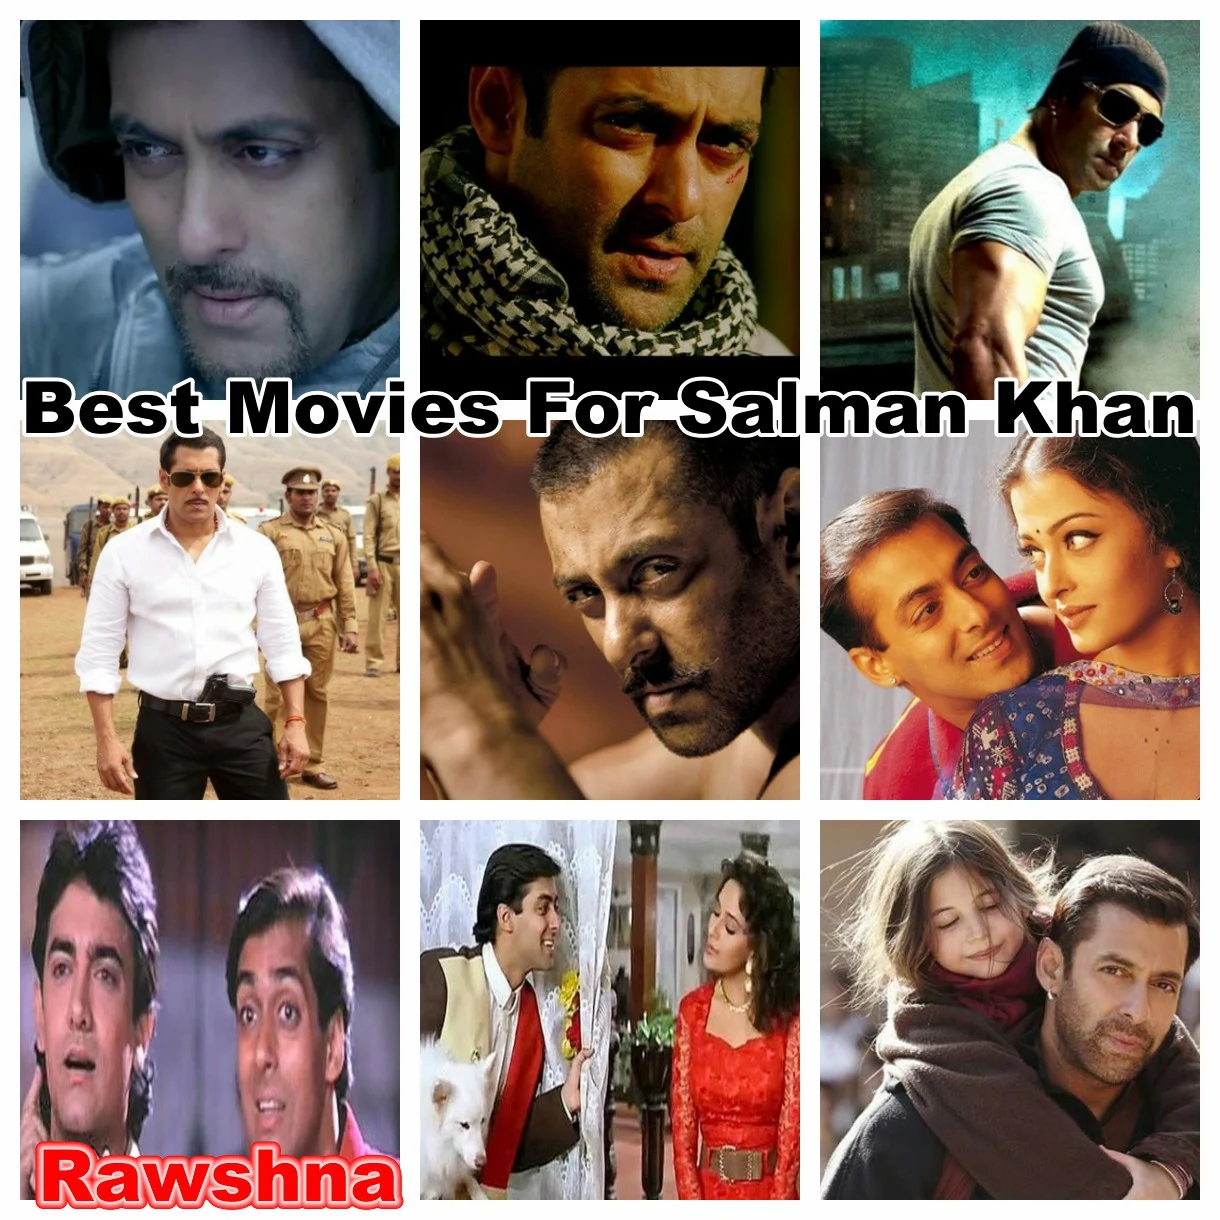 سلمان خان الجديد فلم قائمة الأفلام